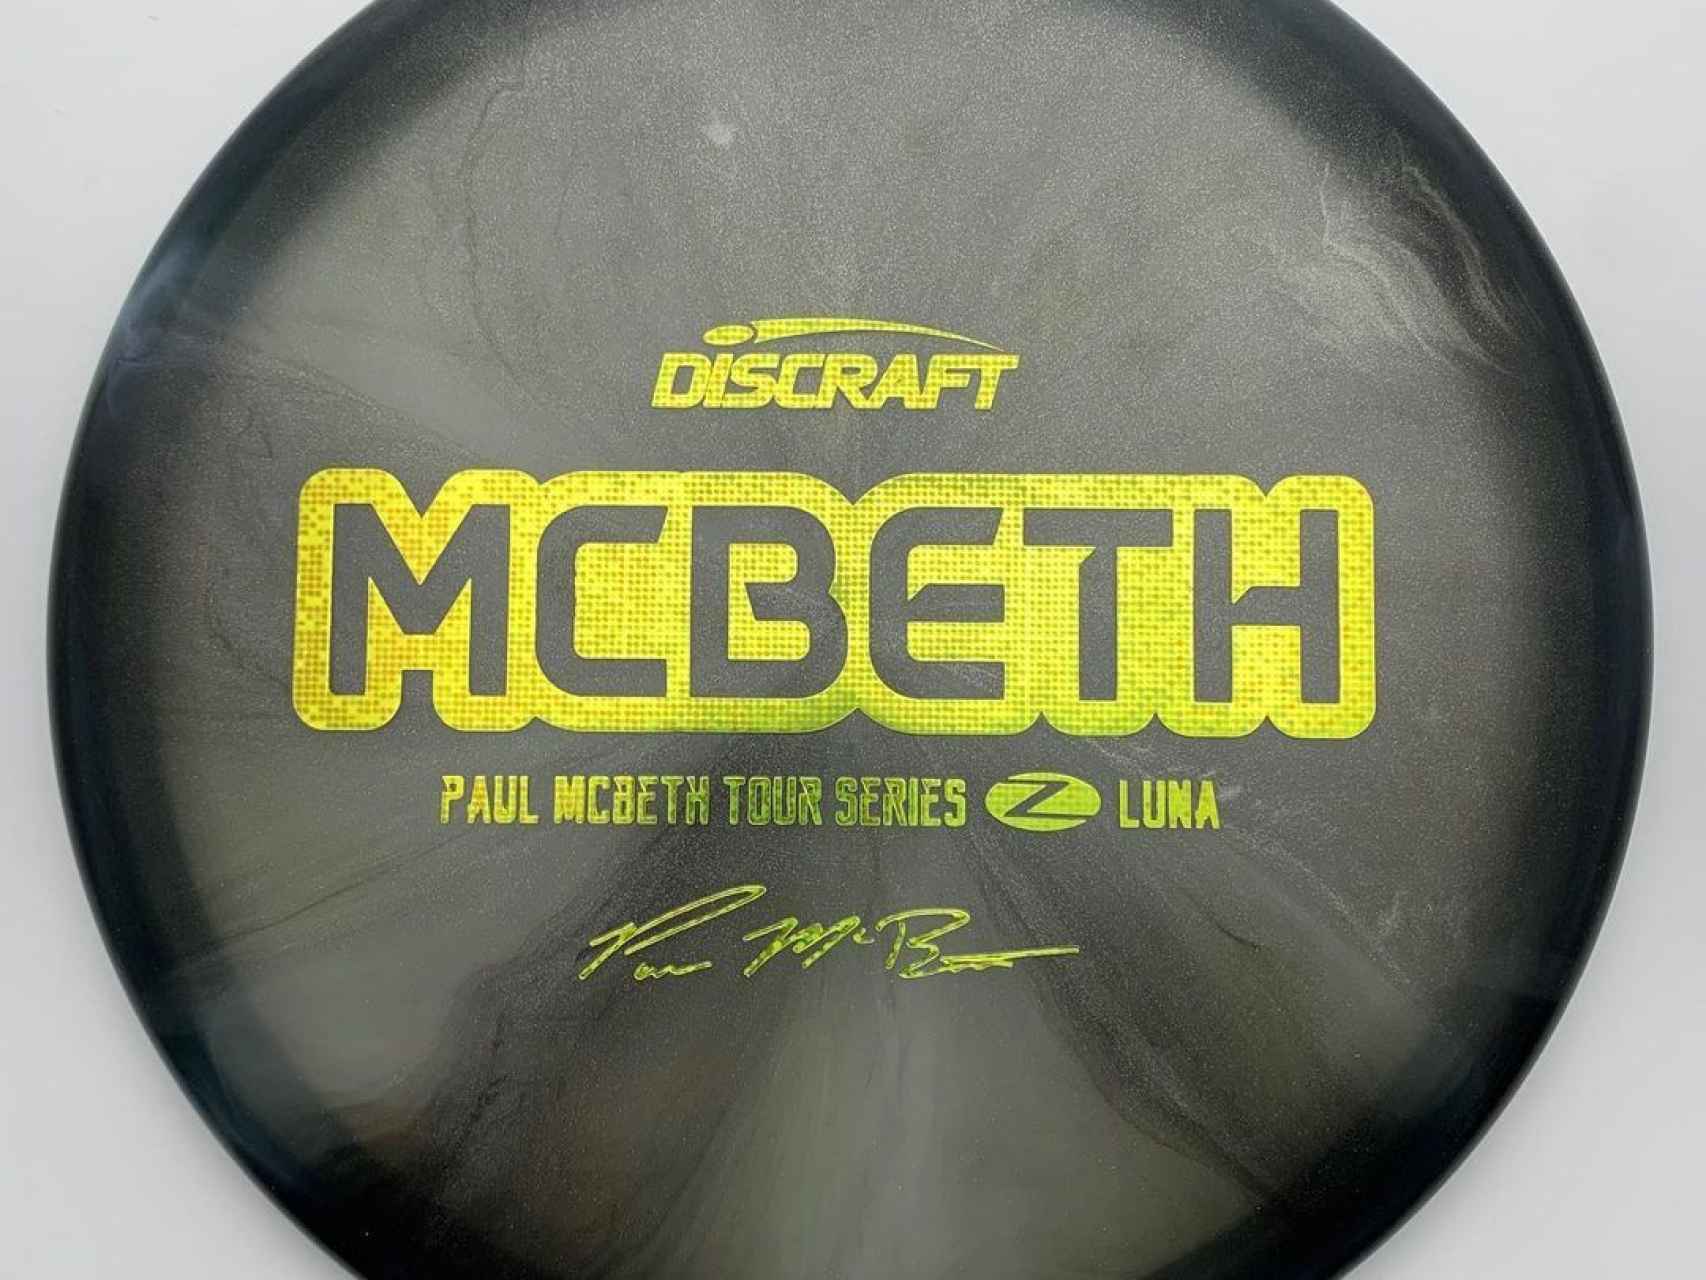 Frisbee de la marca Discraft de Paul McBeth